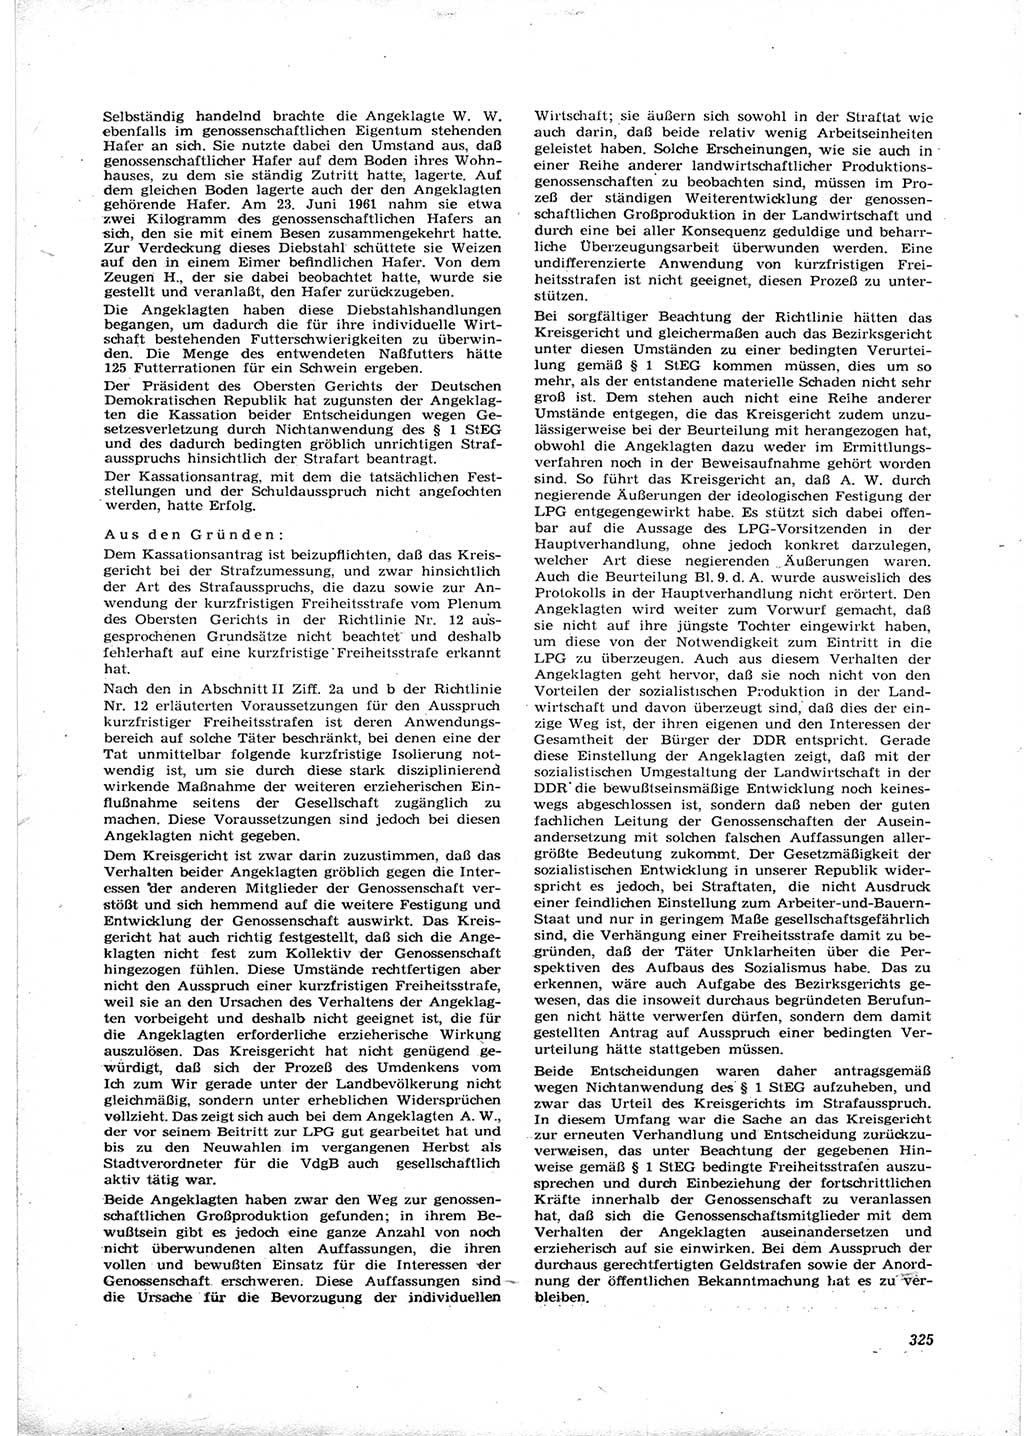 Neue Justiz (NJ), Zeitschrift für Recht und Rechtswissenschaft [Deutsche Demokratische Republik (DDR)], 16. Jahrgang 1962, Seite 325 (NJ DDR 1962, S. 325)